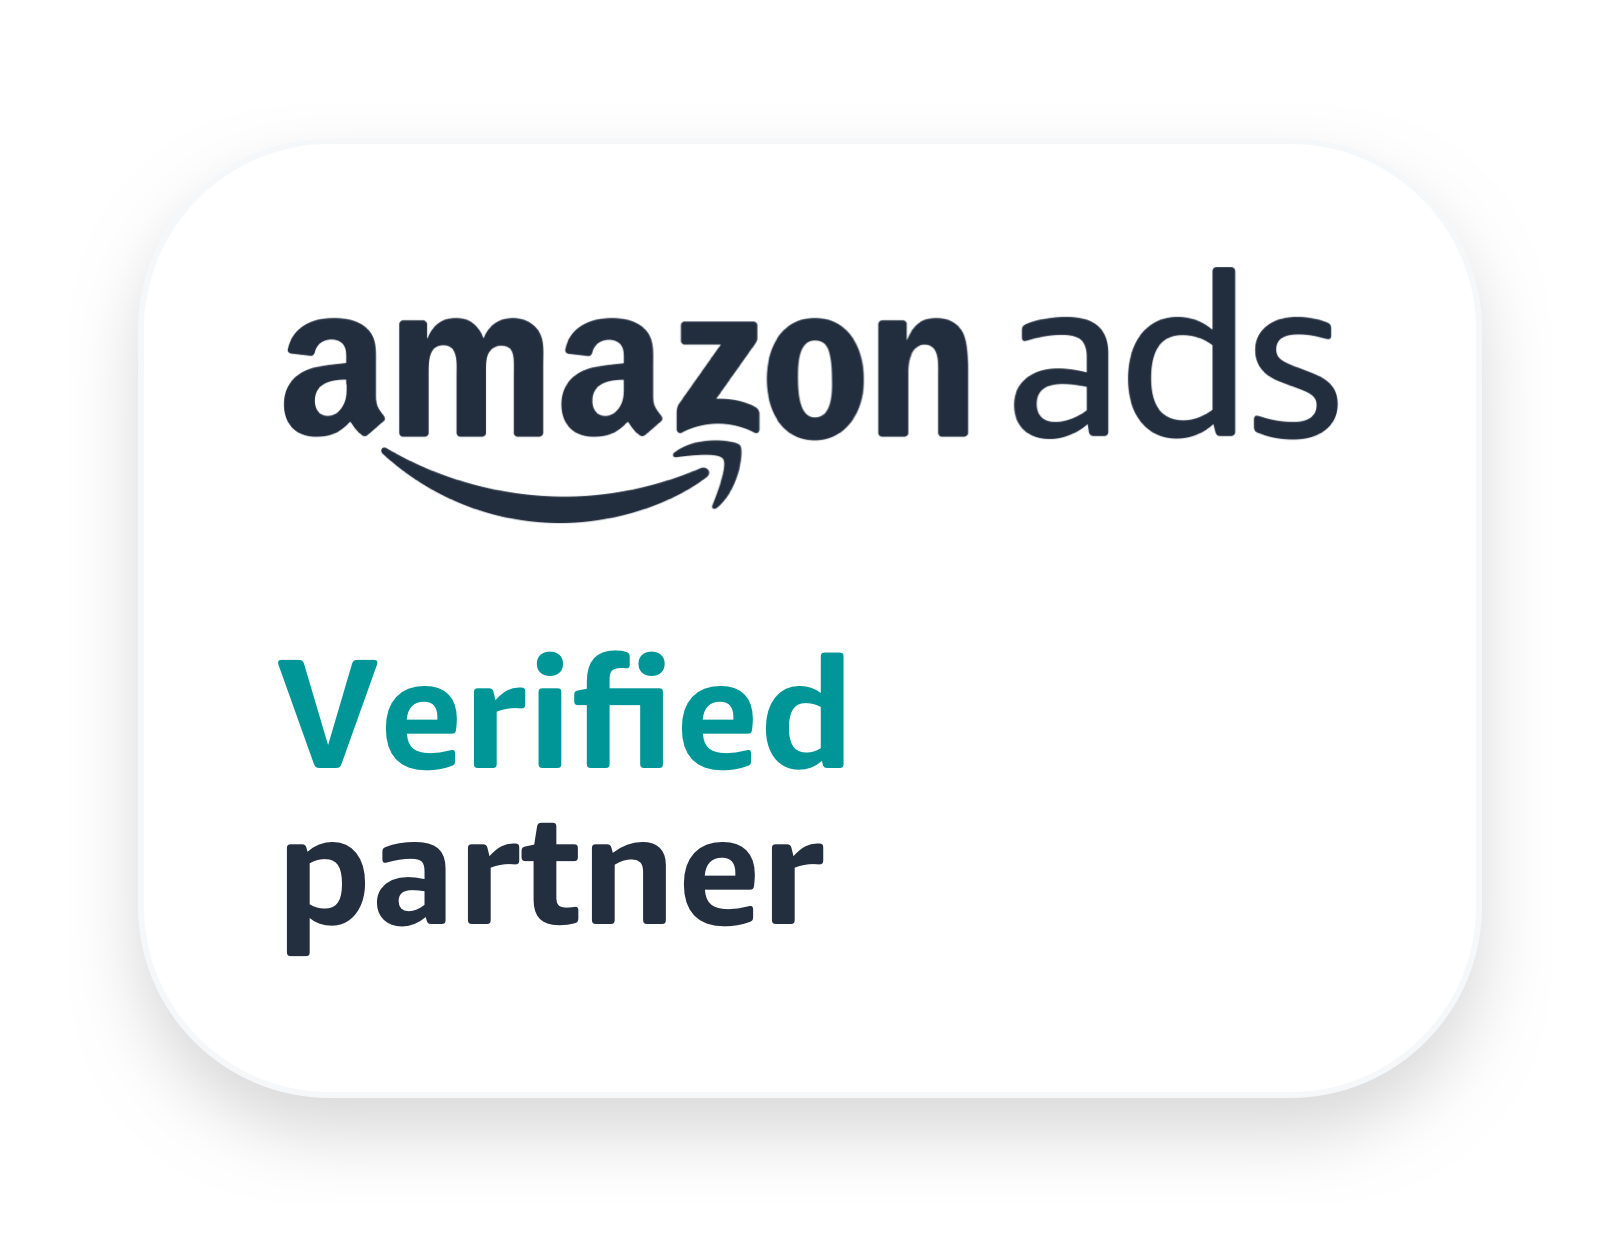 Amazon Ads - Verified Partner